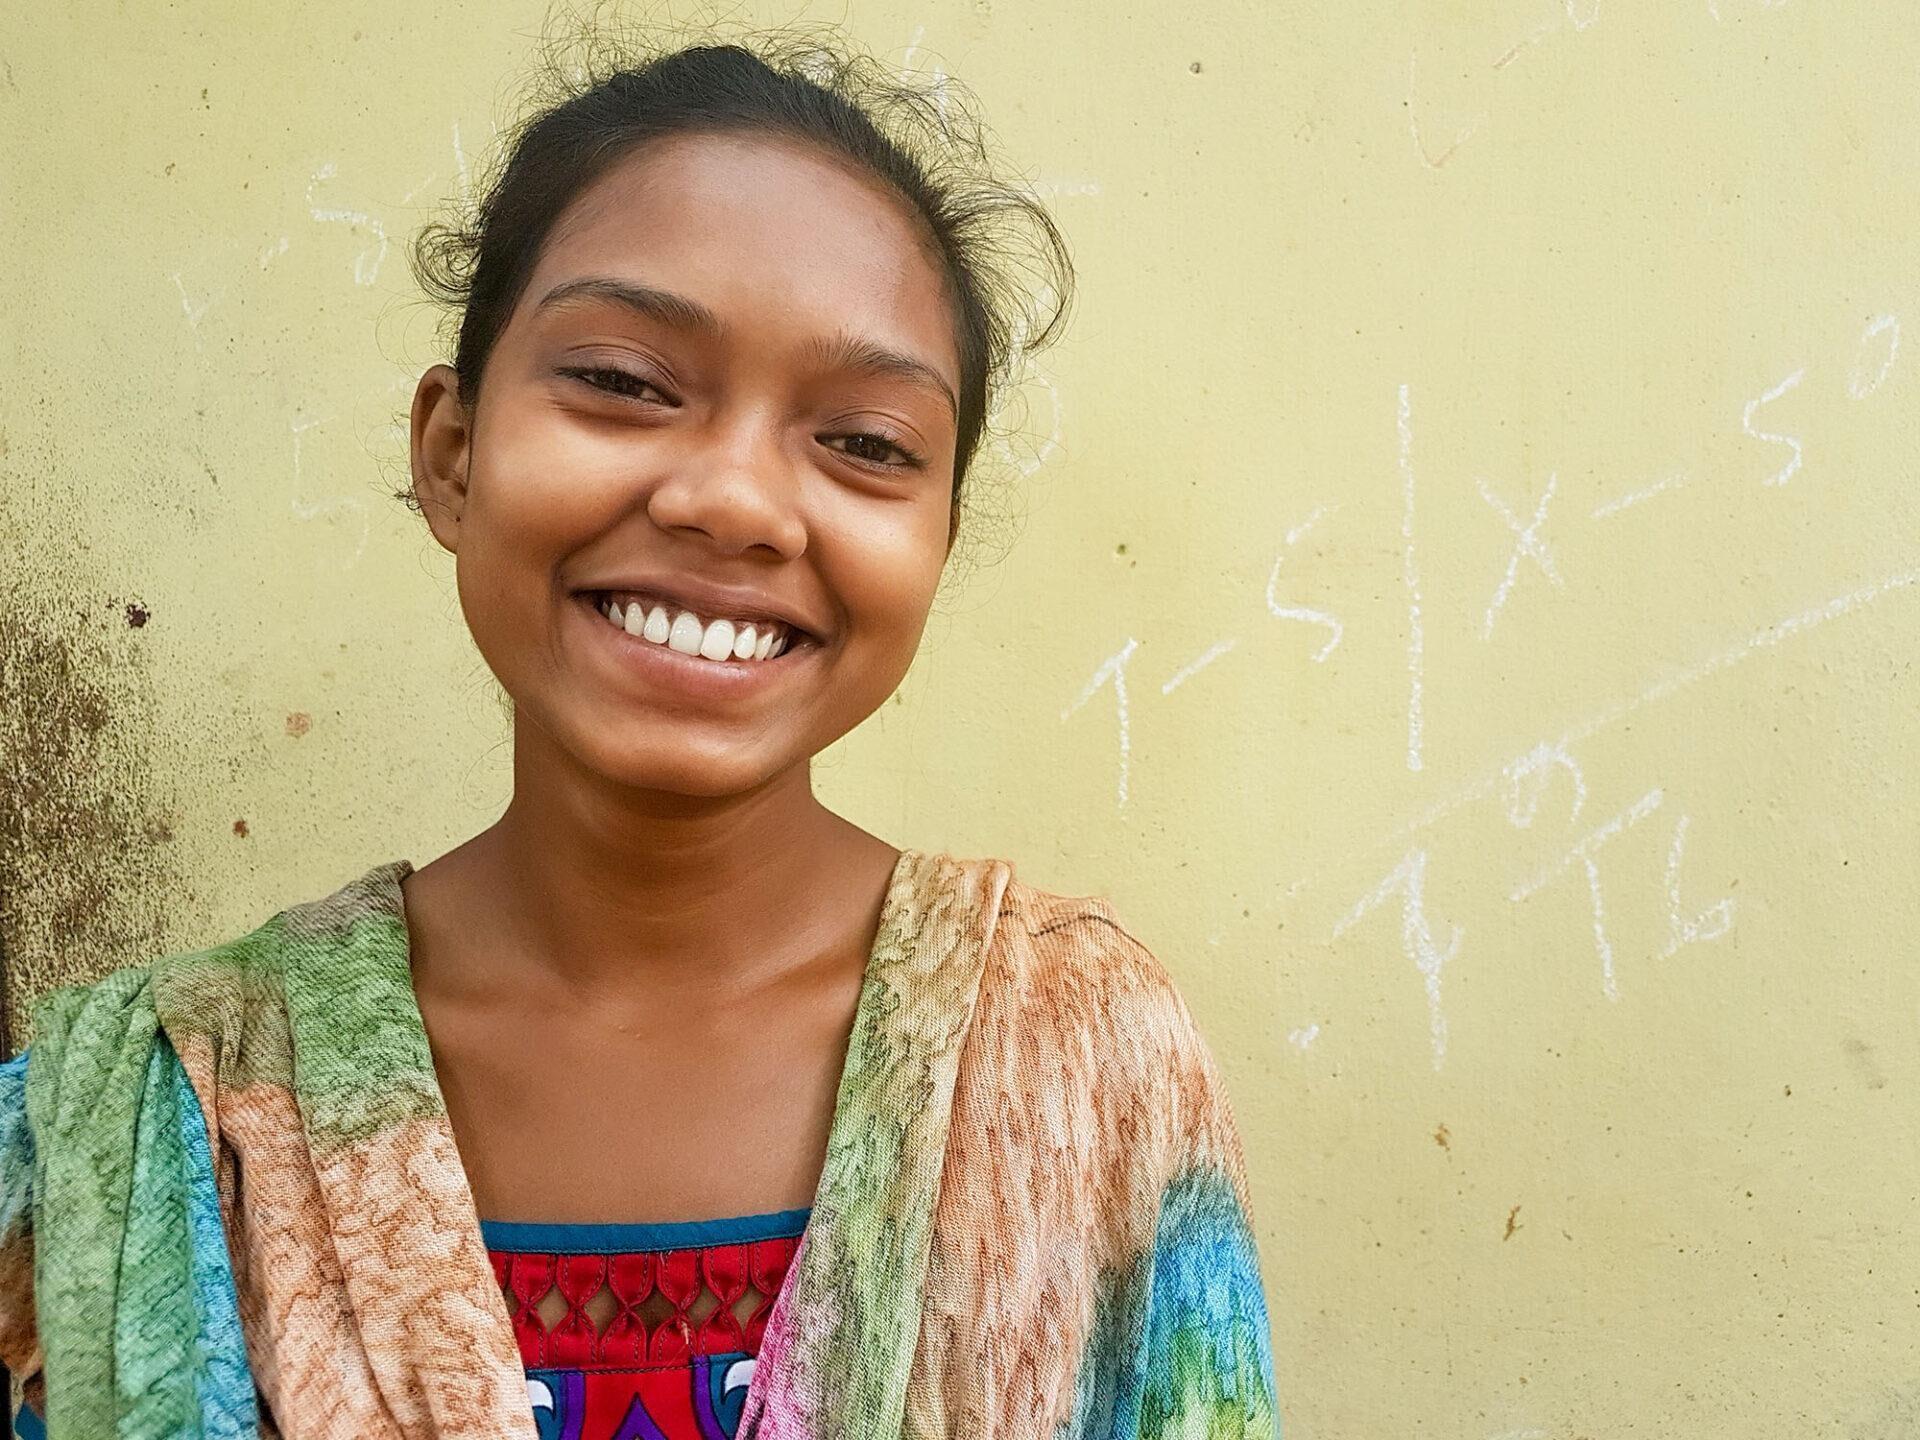 Shudeepta, Tochter einer Leprakranken, bekommt die Chance auf Bildung